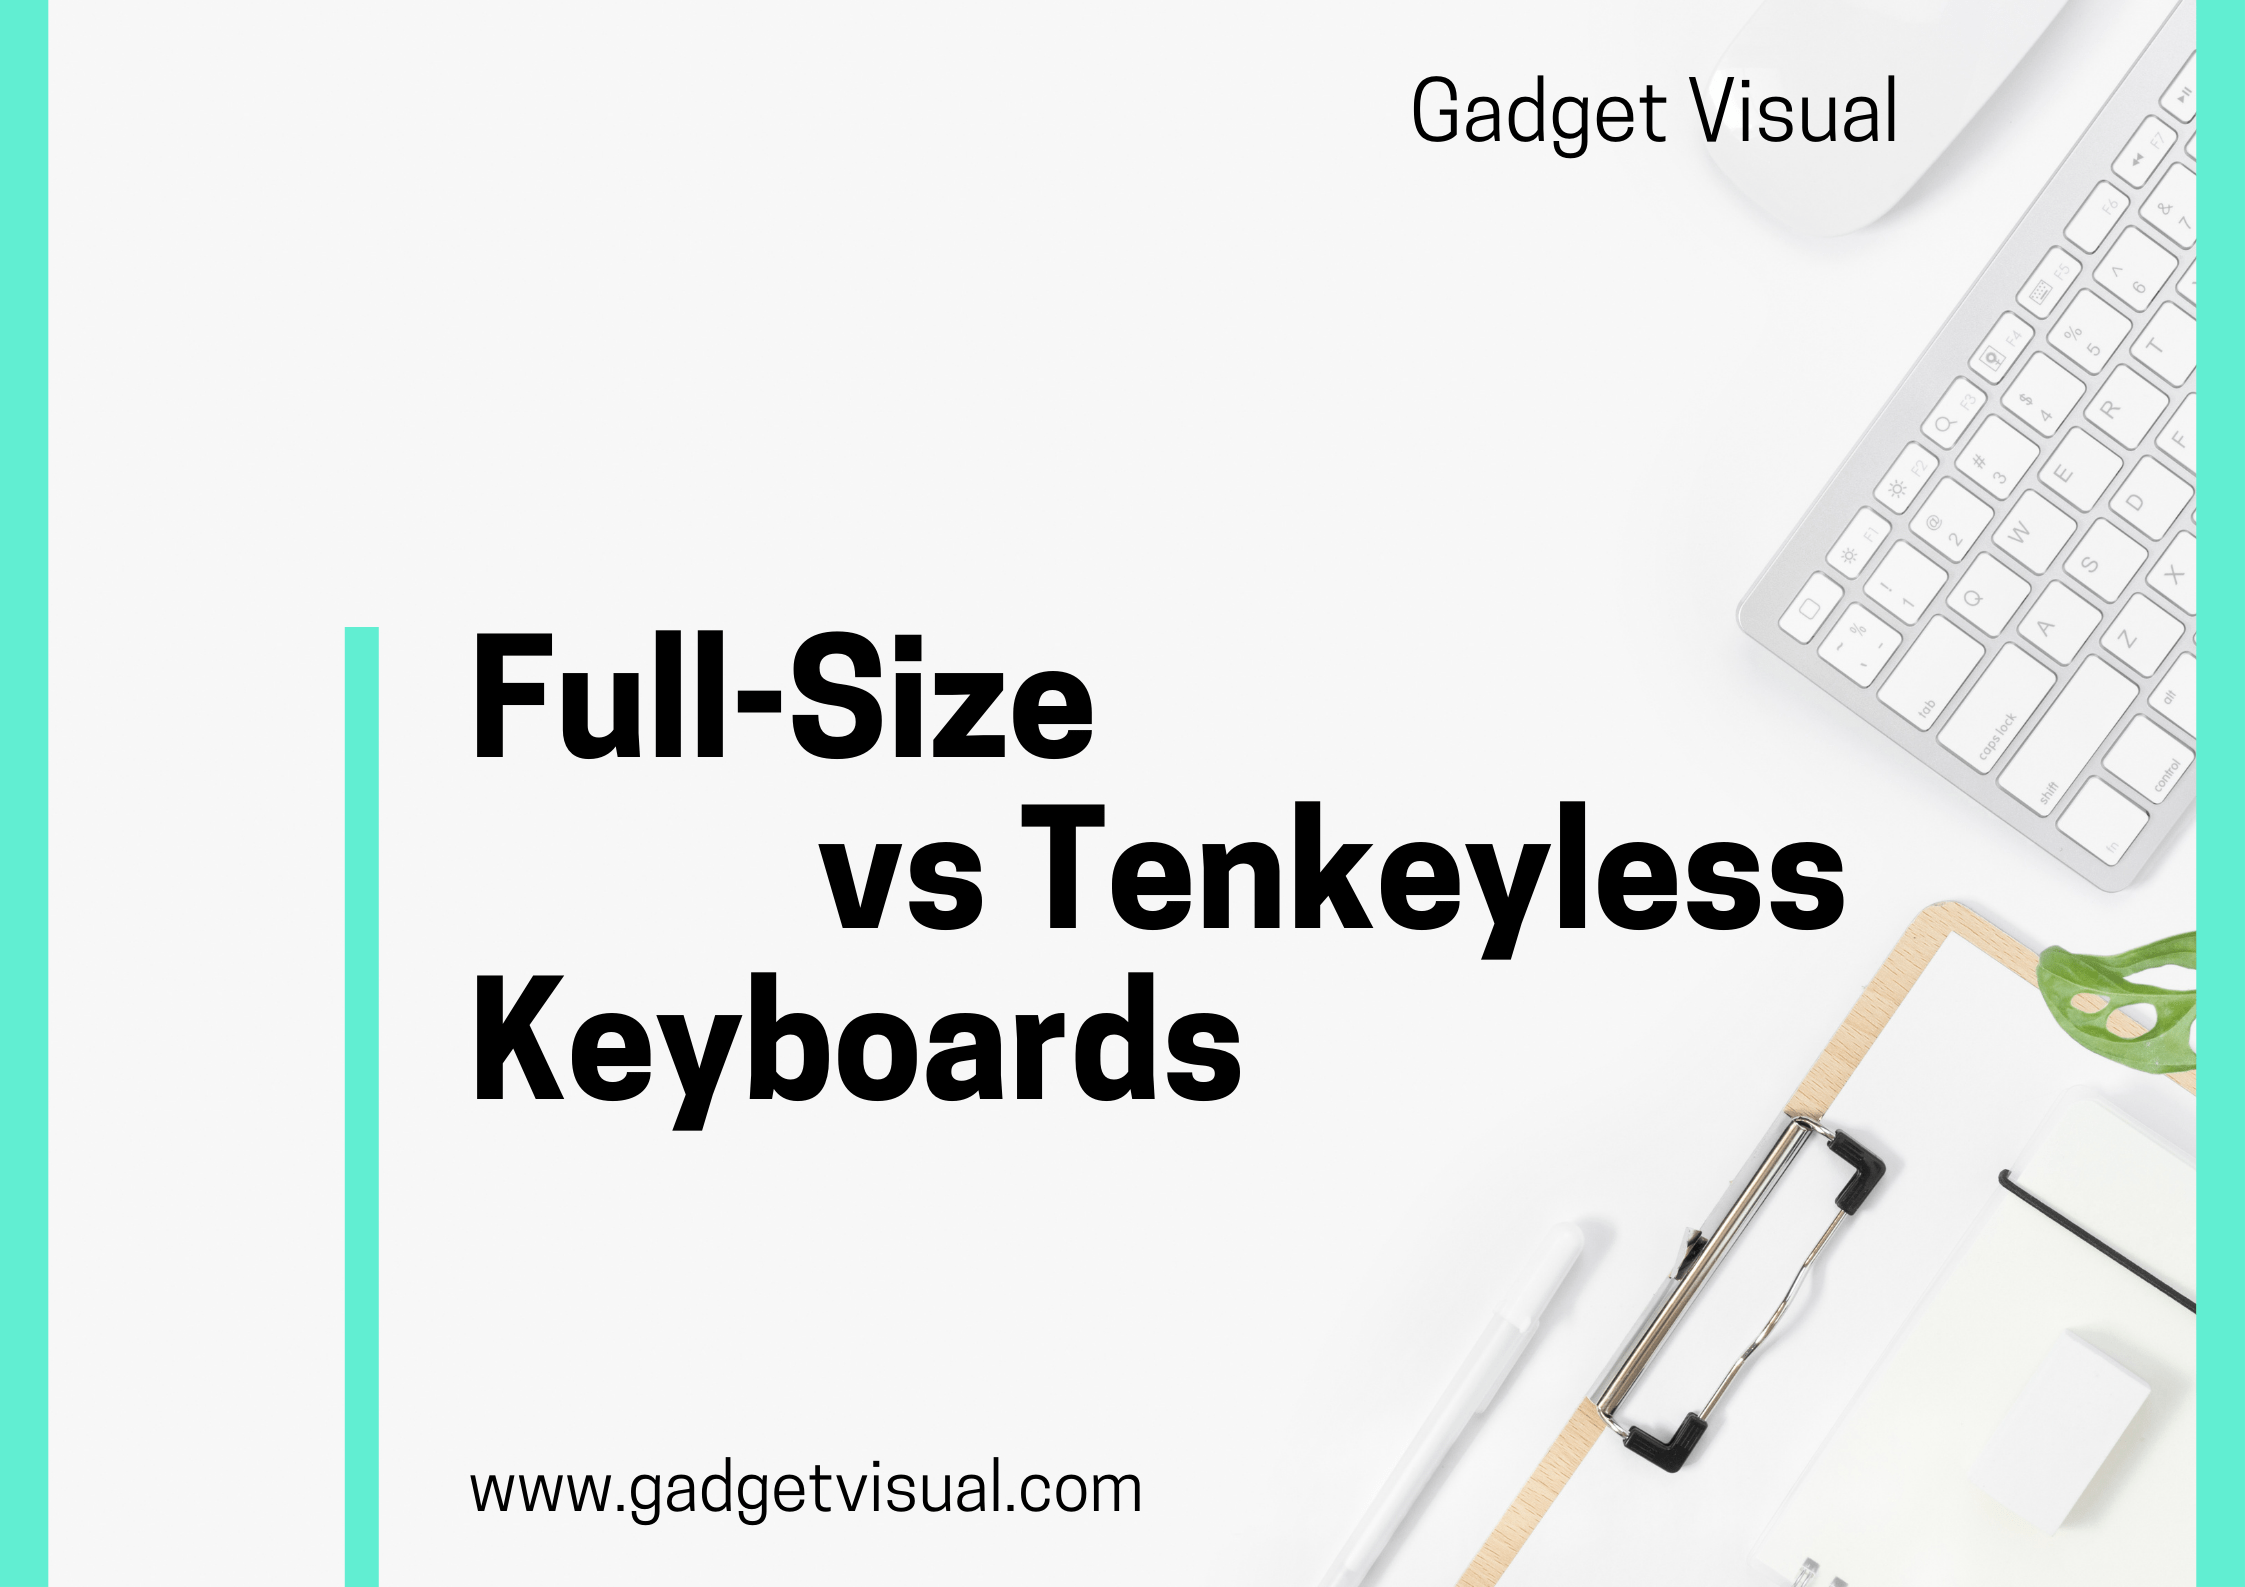 Full-Size vs Tenkeyless Keyboards